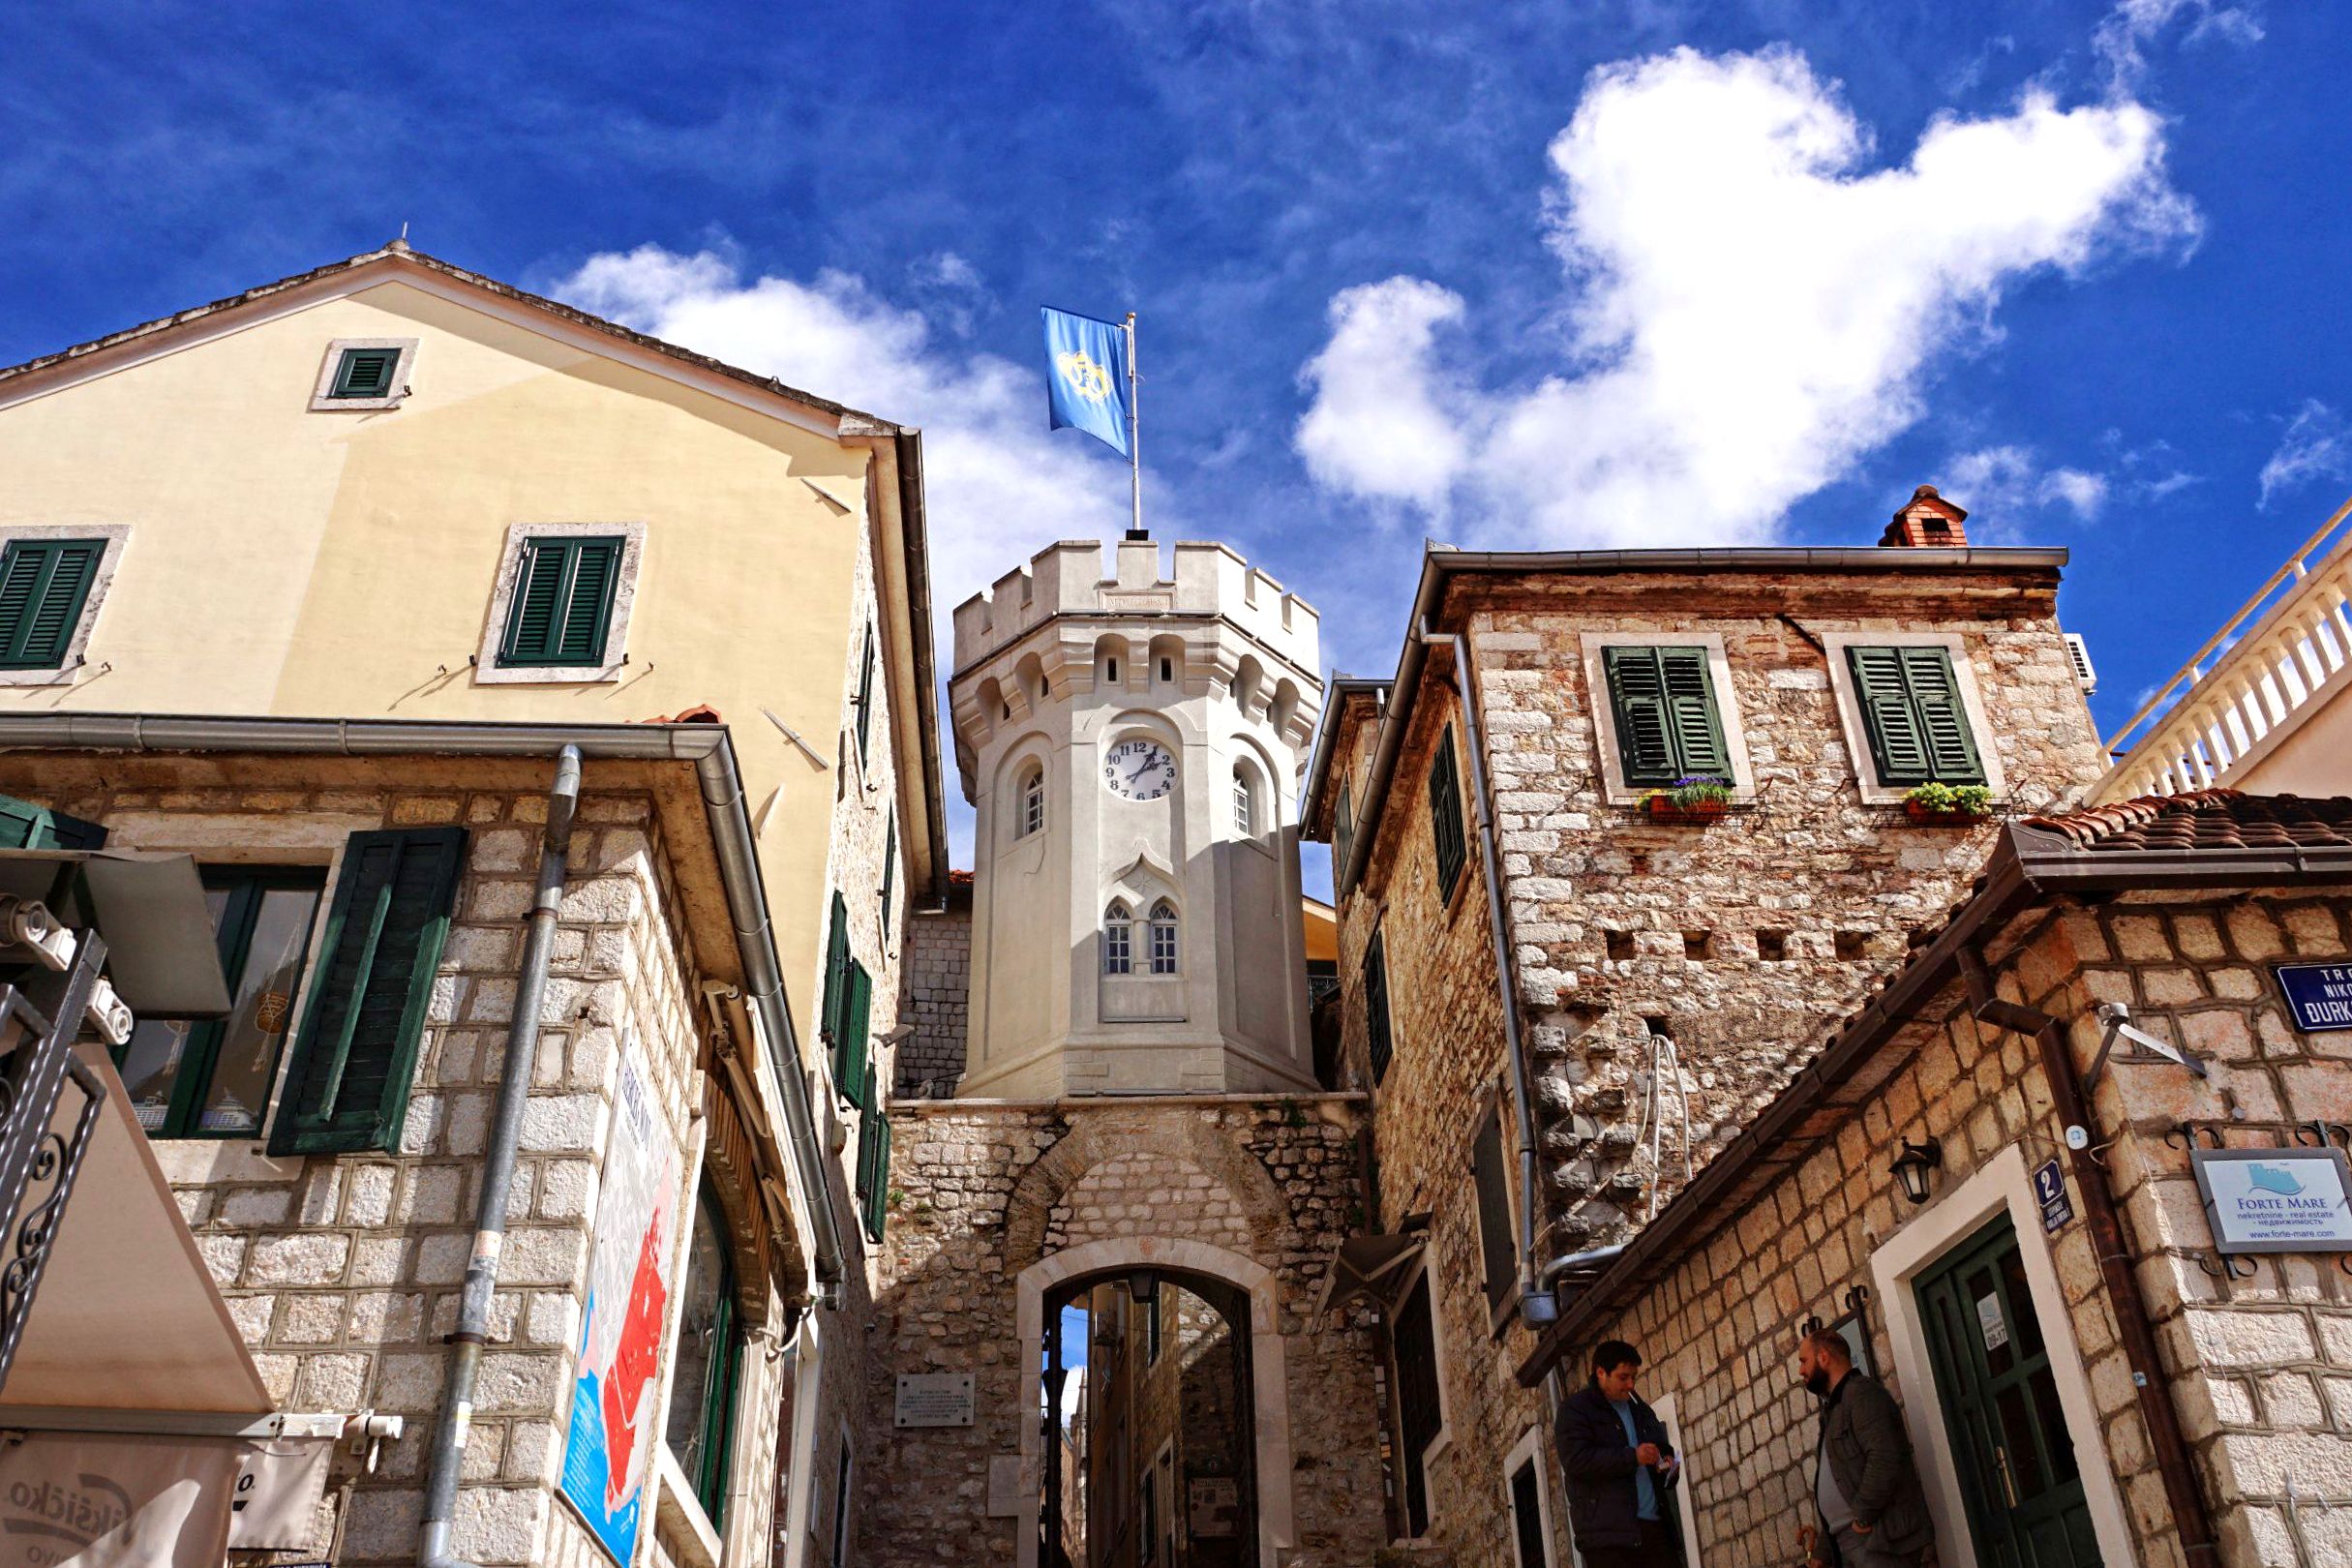 Moje ulubione miejsce w Zatoce Kotorskiej to Herceg Novi